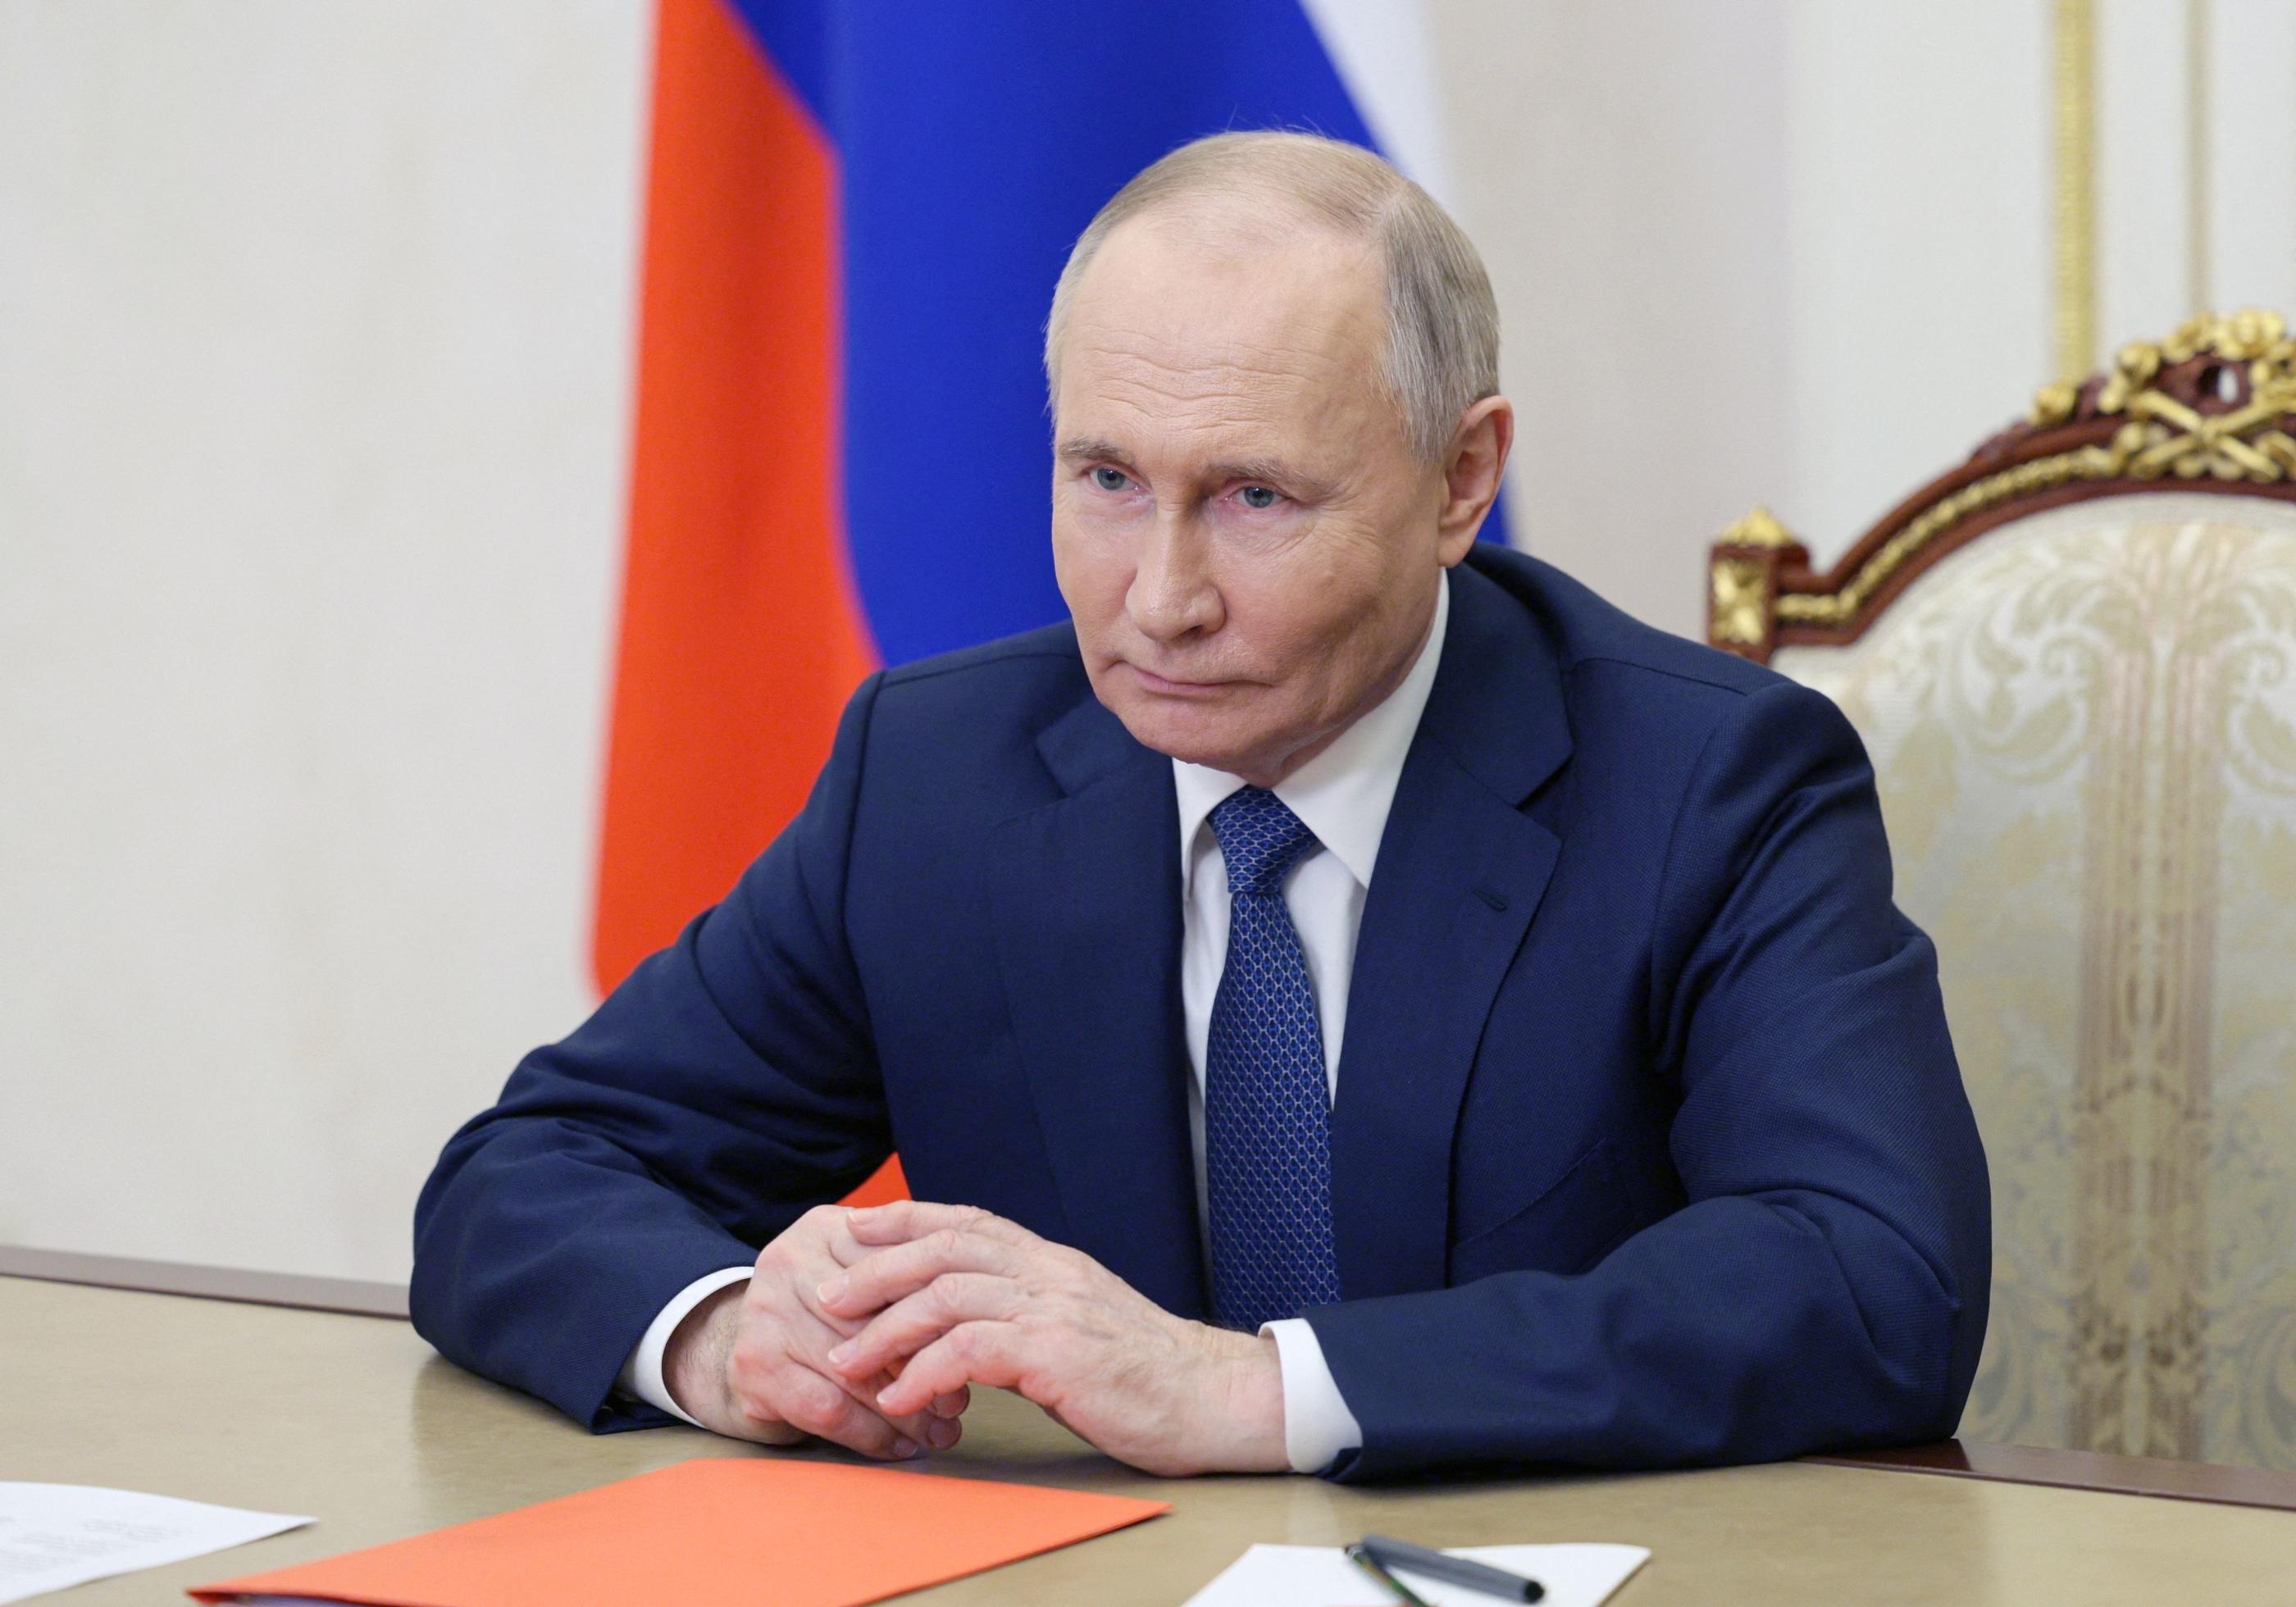 Le président russe a limogé dimanche soir son emblématique ministre de la Défense Sergueï Choïgou, en poste depuis 2012, lors d’un remaniement surprise. AFP/Alexei Babushkin